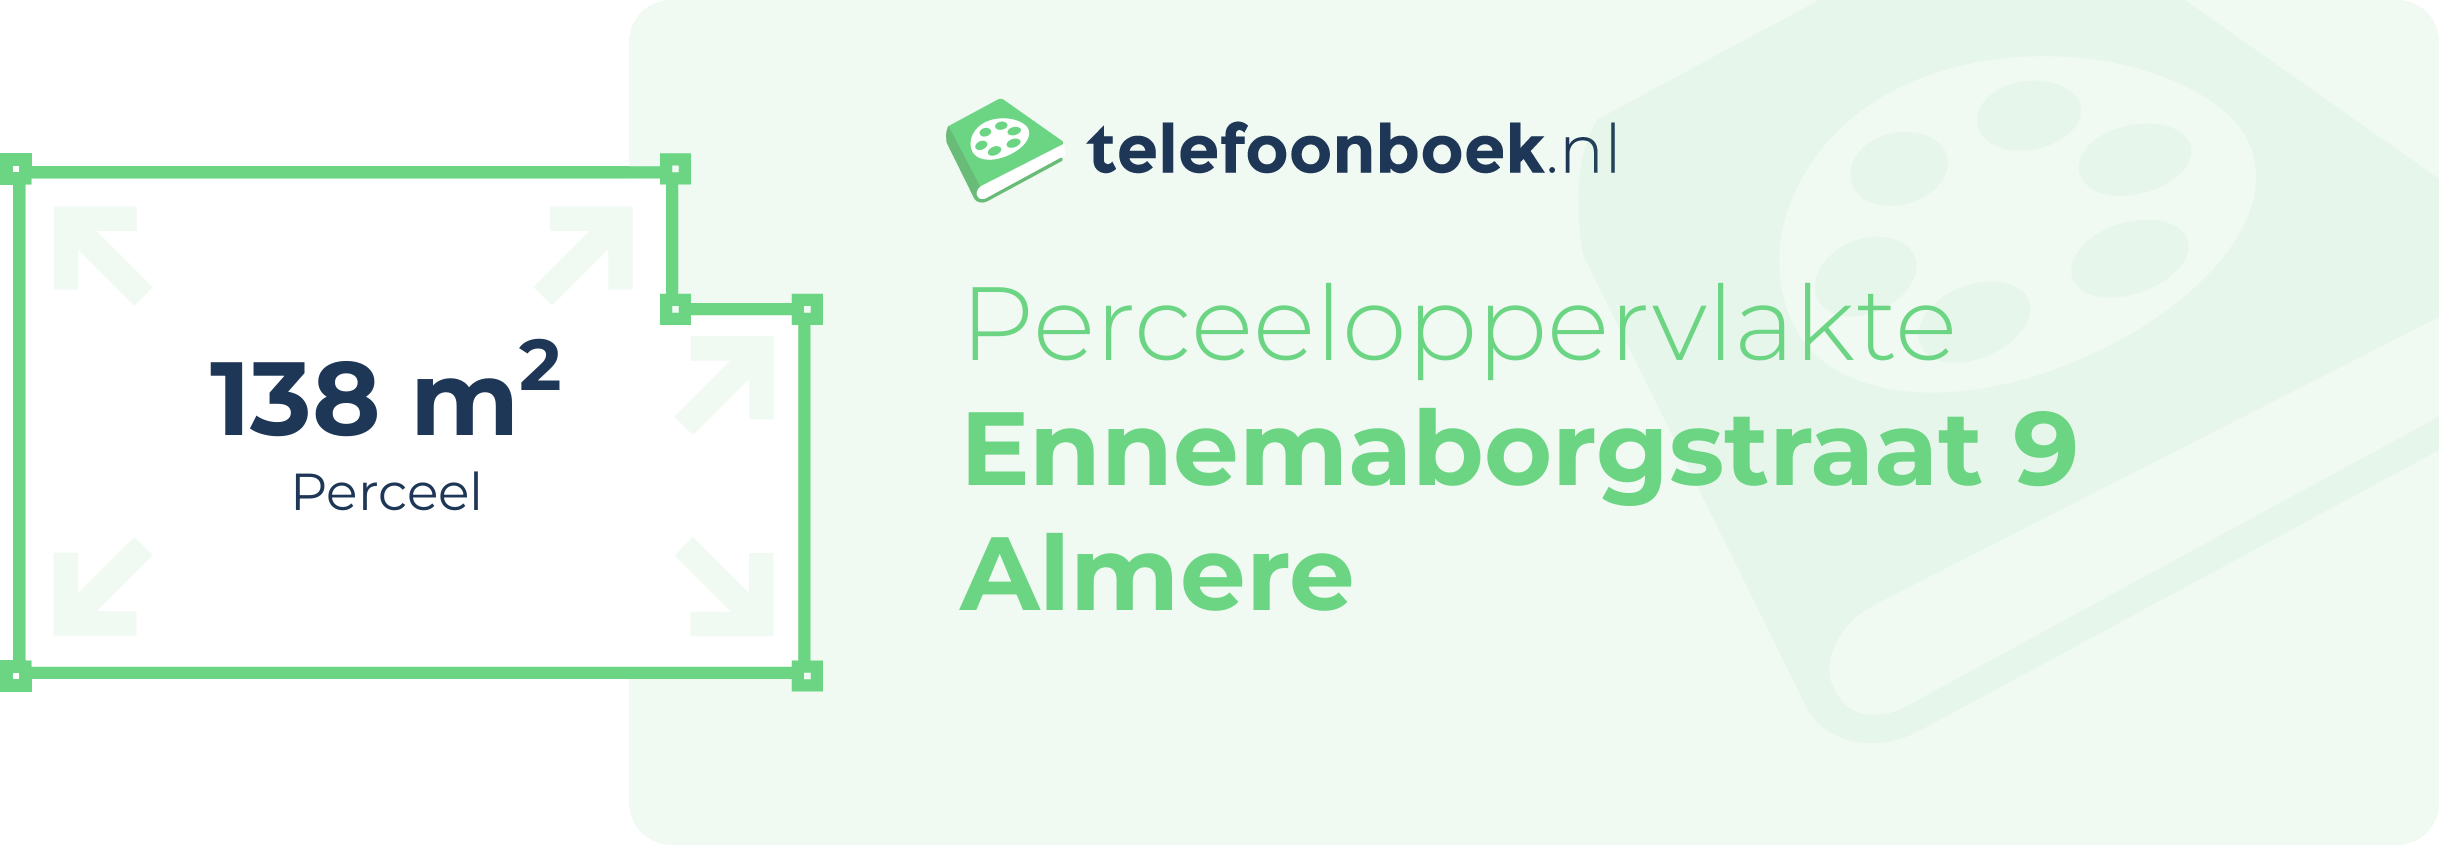 Perceeloppervlakte Ennemaborgstraat 9 Almere